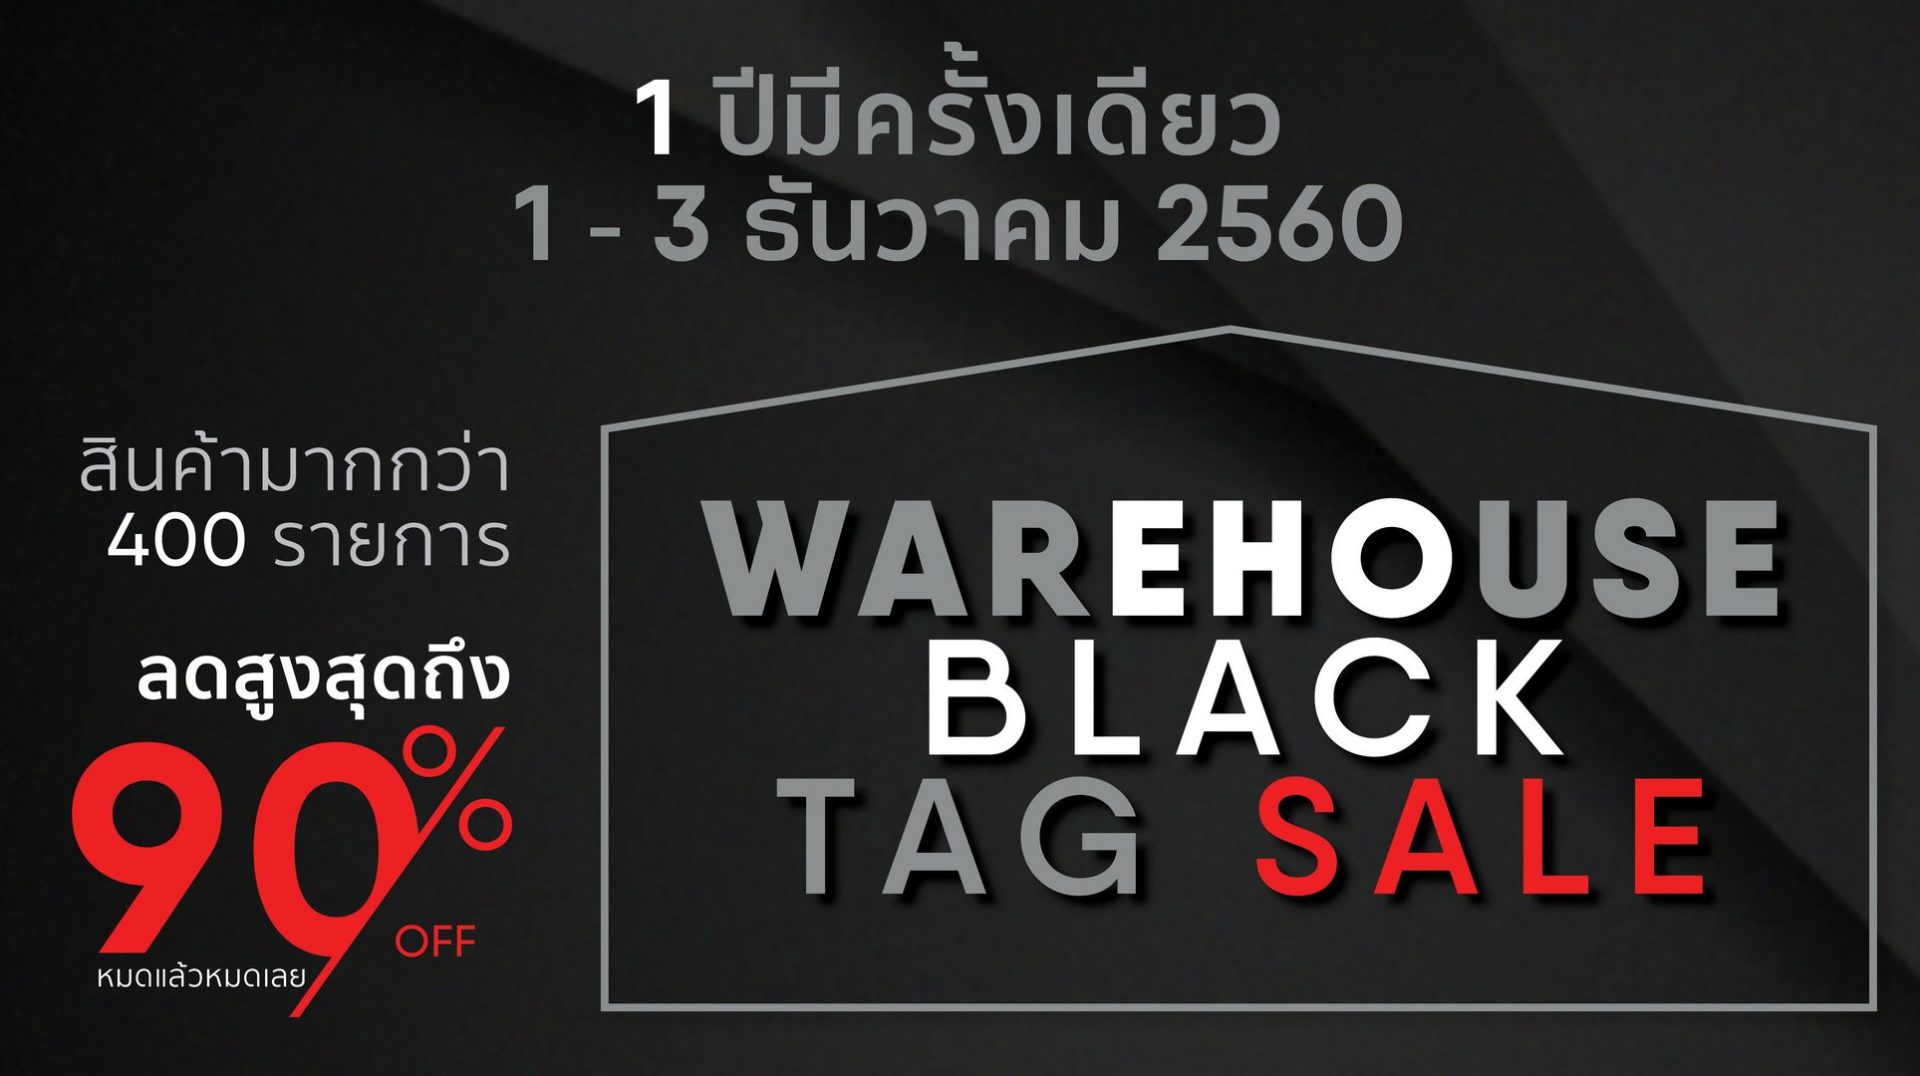 NADZ จัด Black Tag Sale ลดราคาเกมสูงสุด 90% วันที่ 1-3 ธ.ค.เท่านั้น